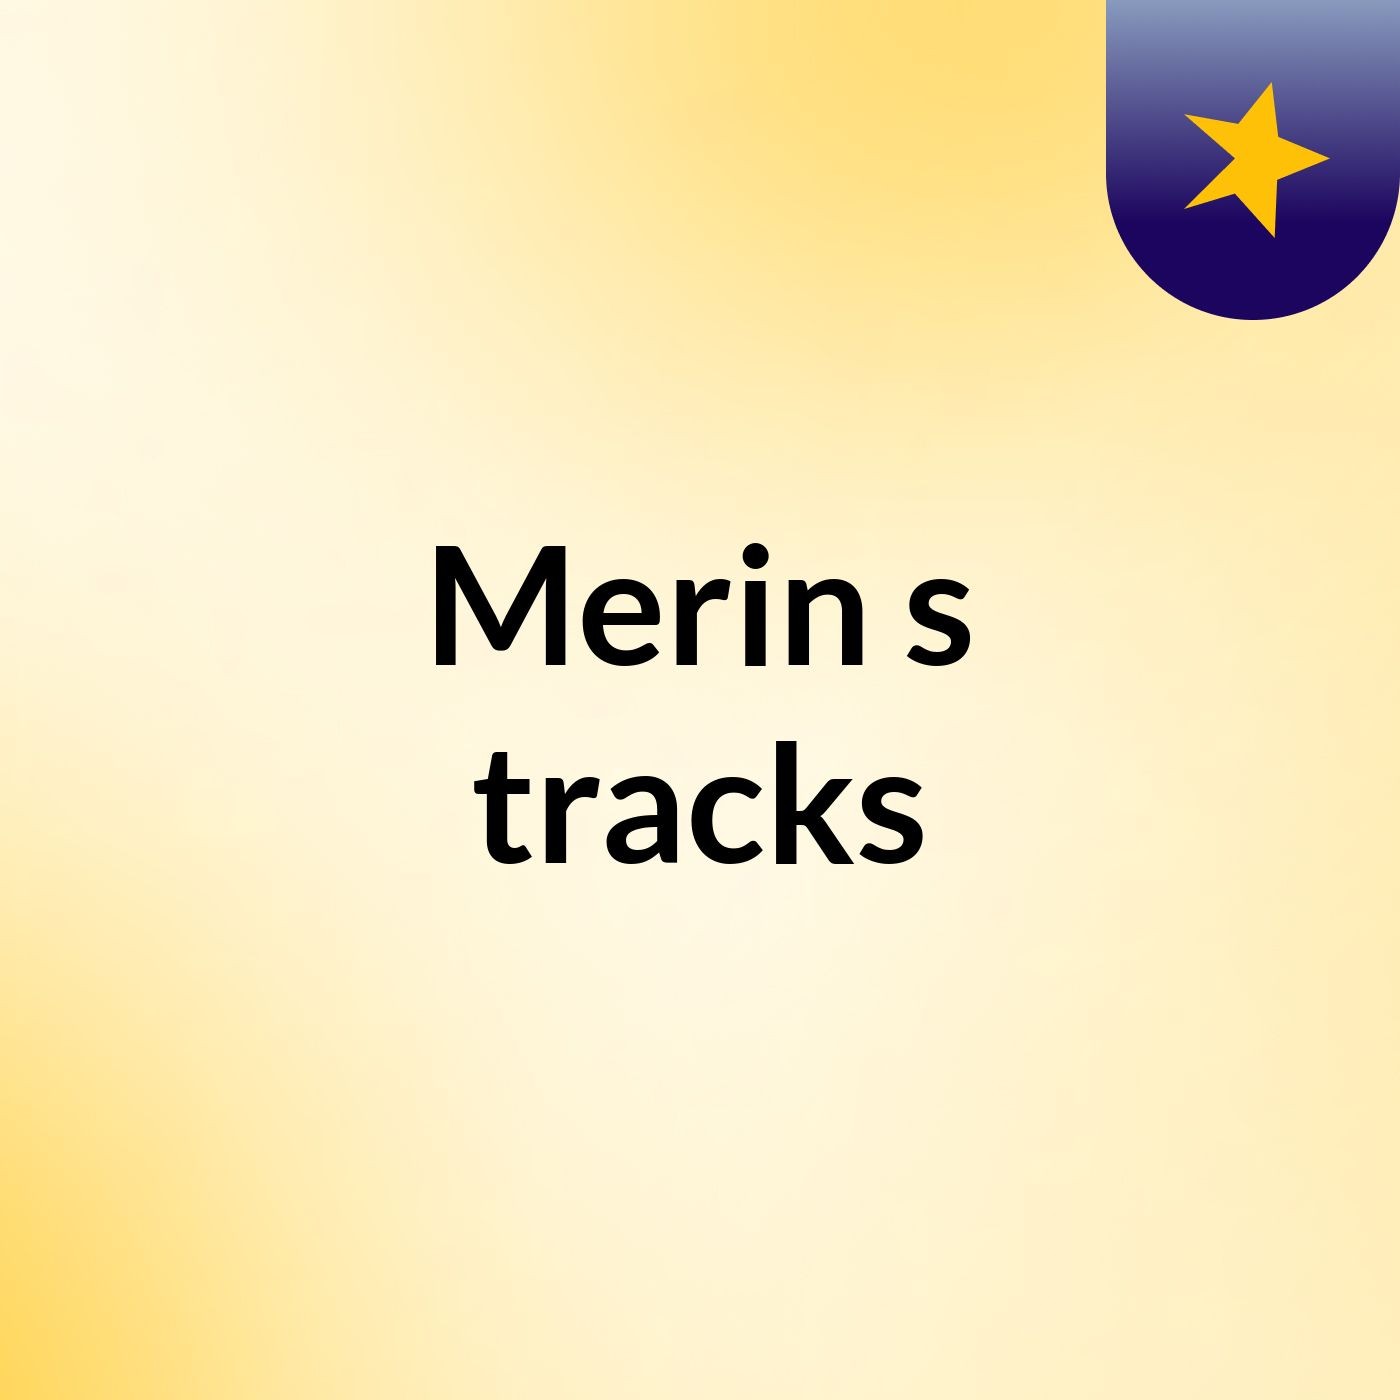 Merin 's tracks